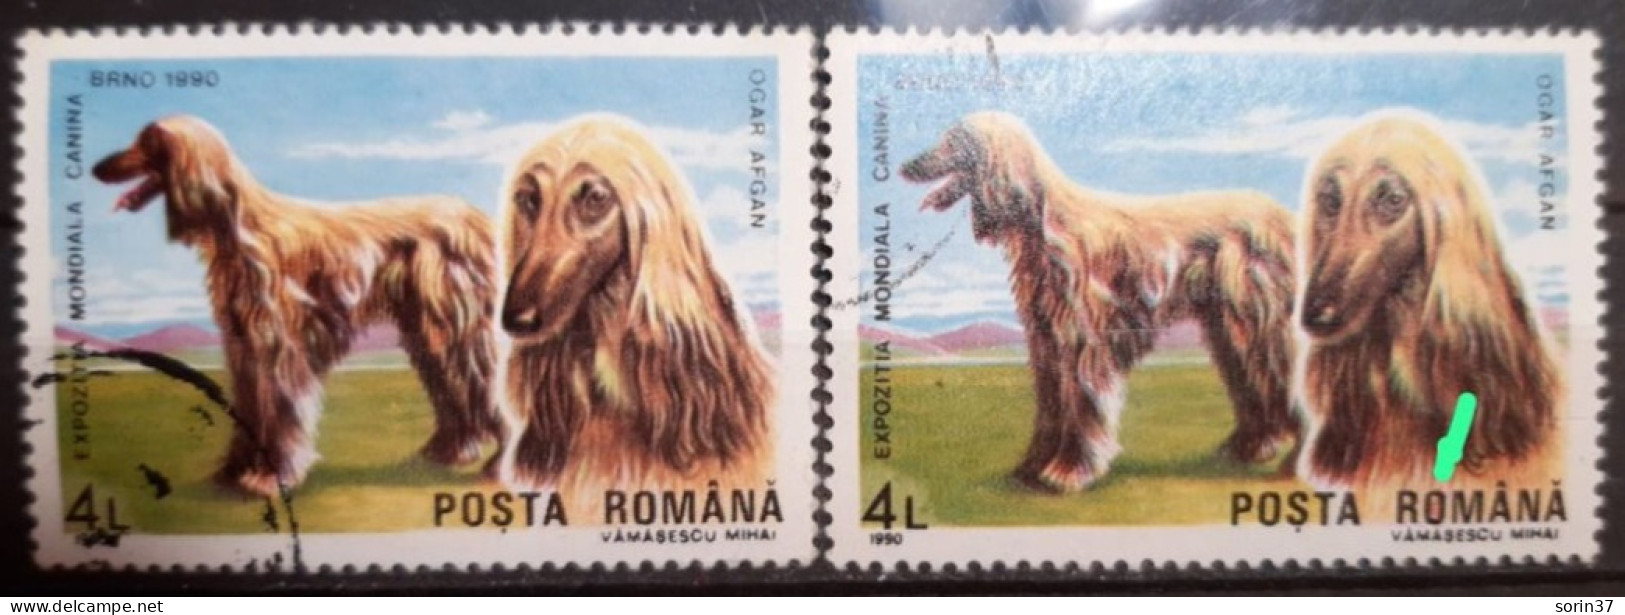 RUMANIA / ROMANIA / Error Año 1990 Yvert Nr. 3875 Usado O De Romania, Rojo Por Dentro - Plaatfouten En Curiosa